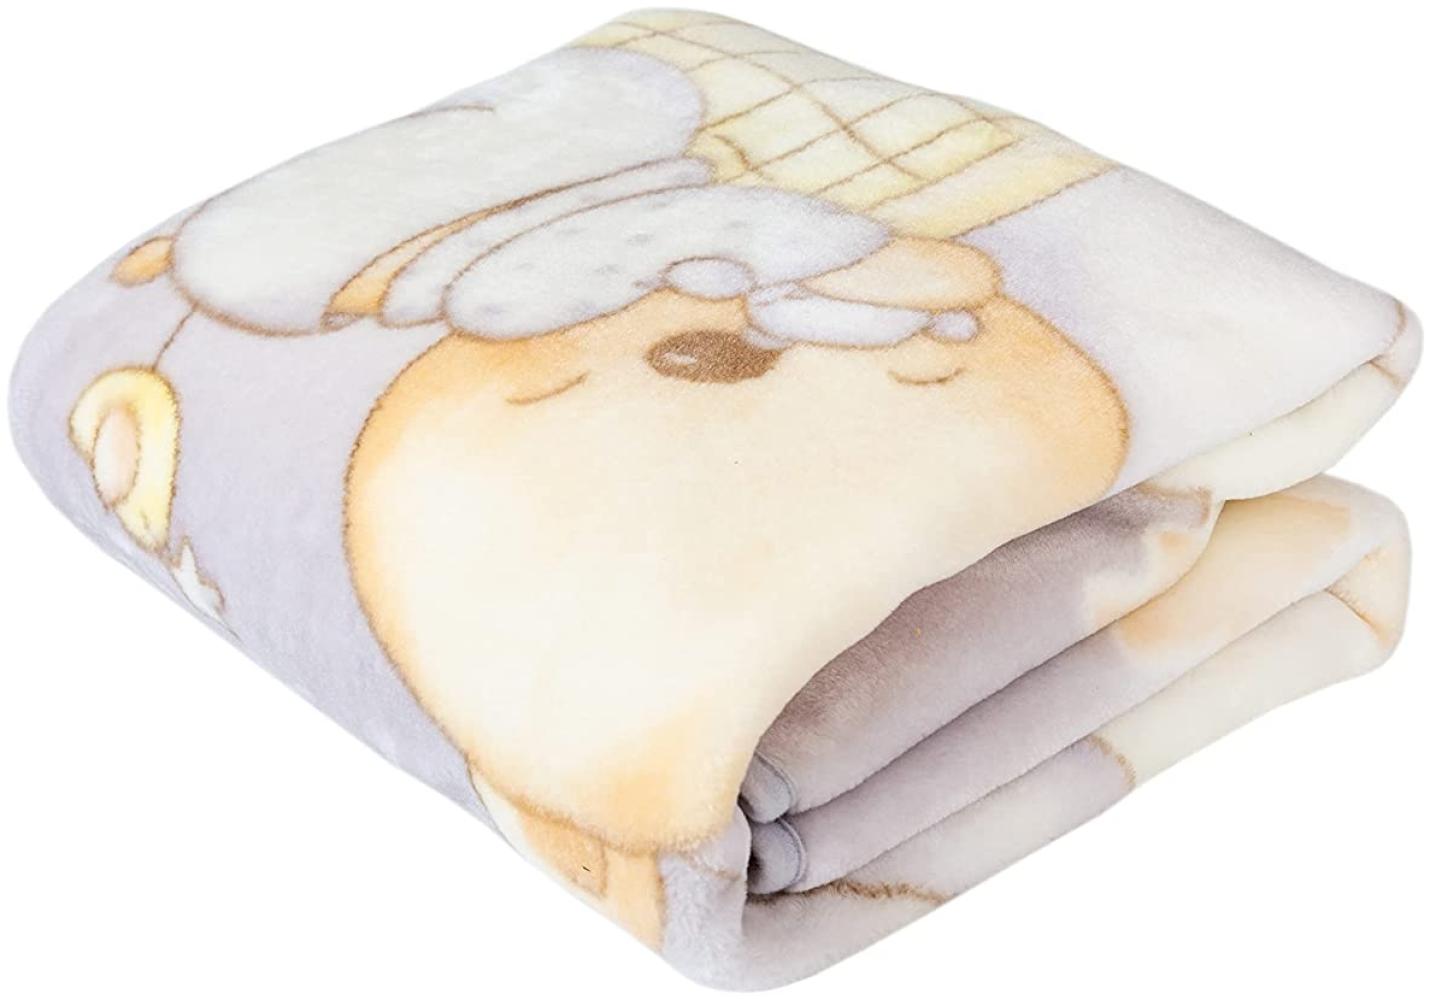 Pielsa Baby - 6375-91 | Decke aus Baumwolle für Babys, Größe 80 x 110 cm, Grau, atmungsaktiv, bequem, hypoallergen und milbendicht, maximale Weichheit und Komfort Bild 1